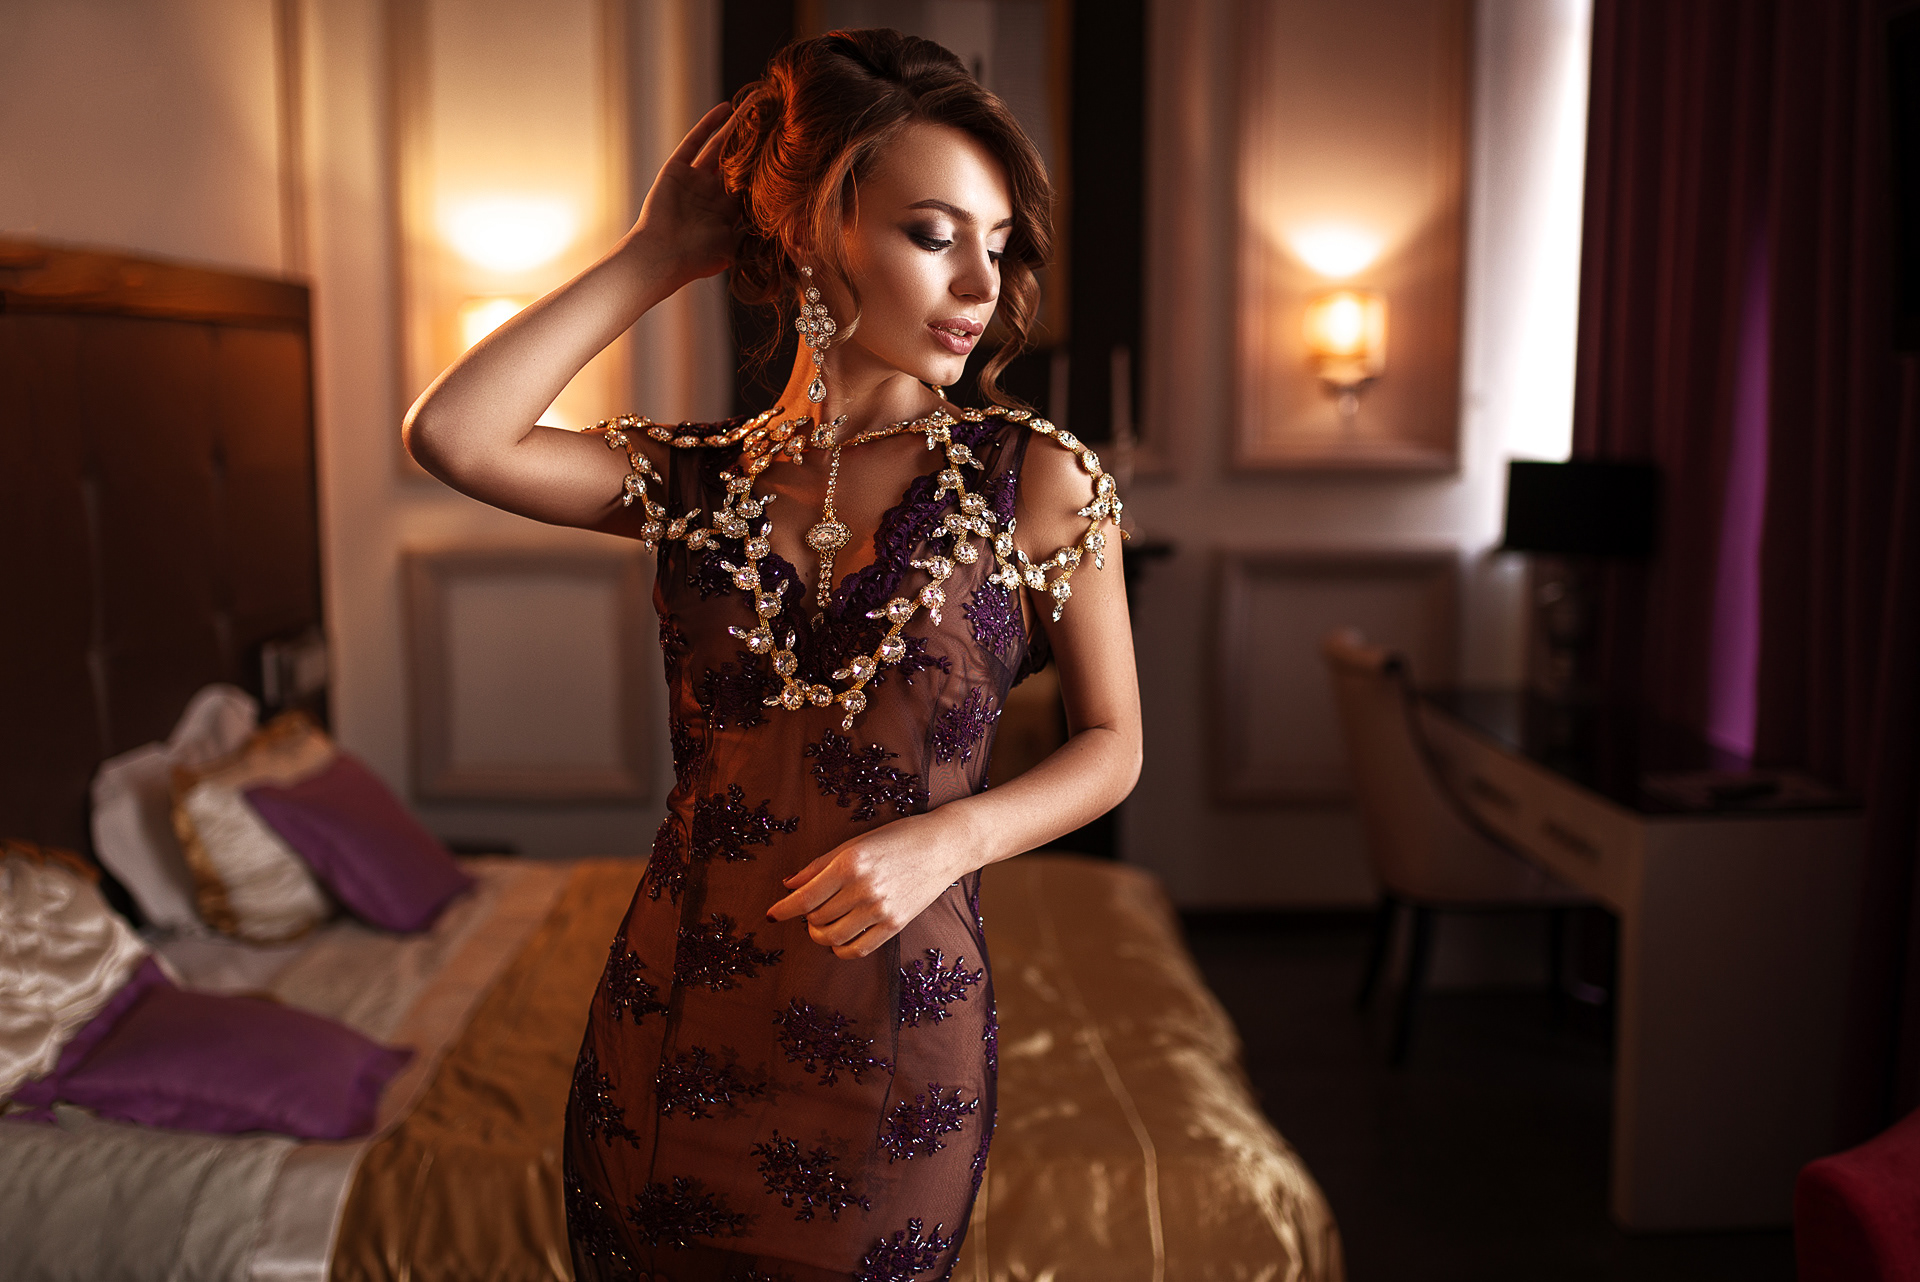 People 1920x1282 Maks Kuzin luxury women model dress jewelry hotel bed purple dress lipstick earring